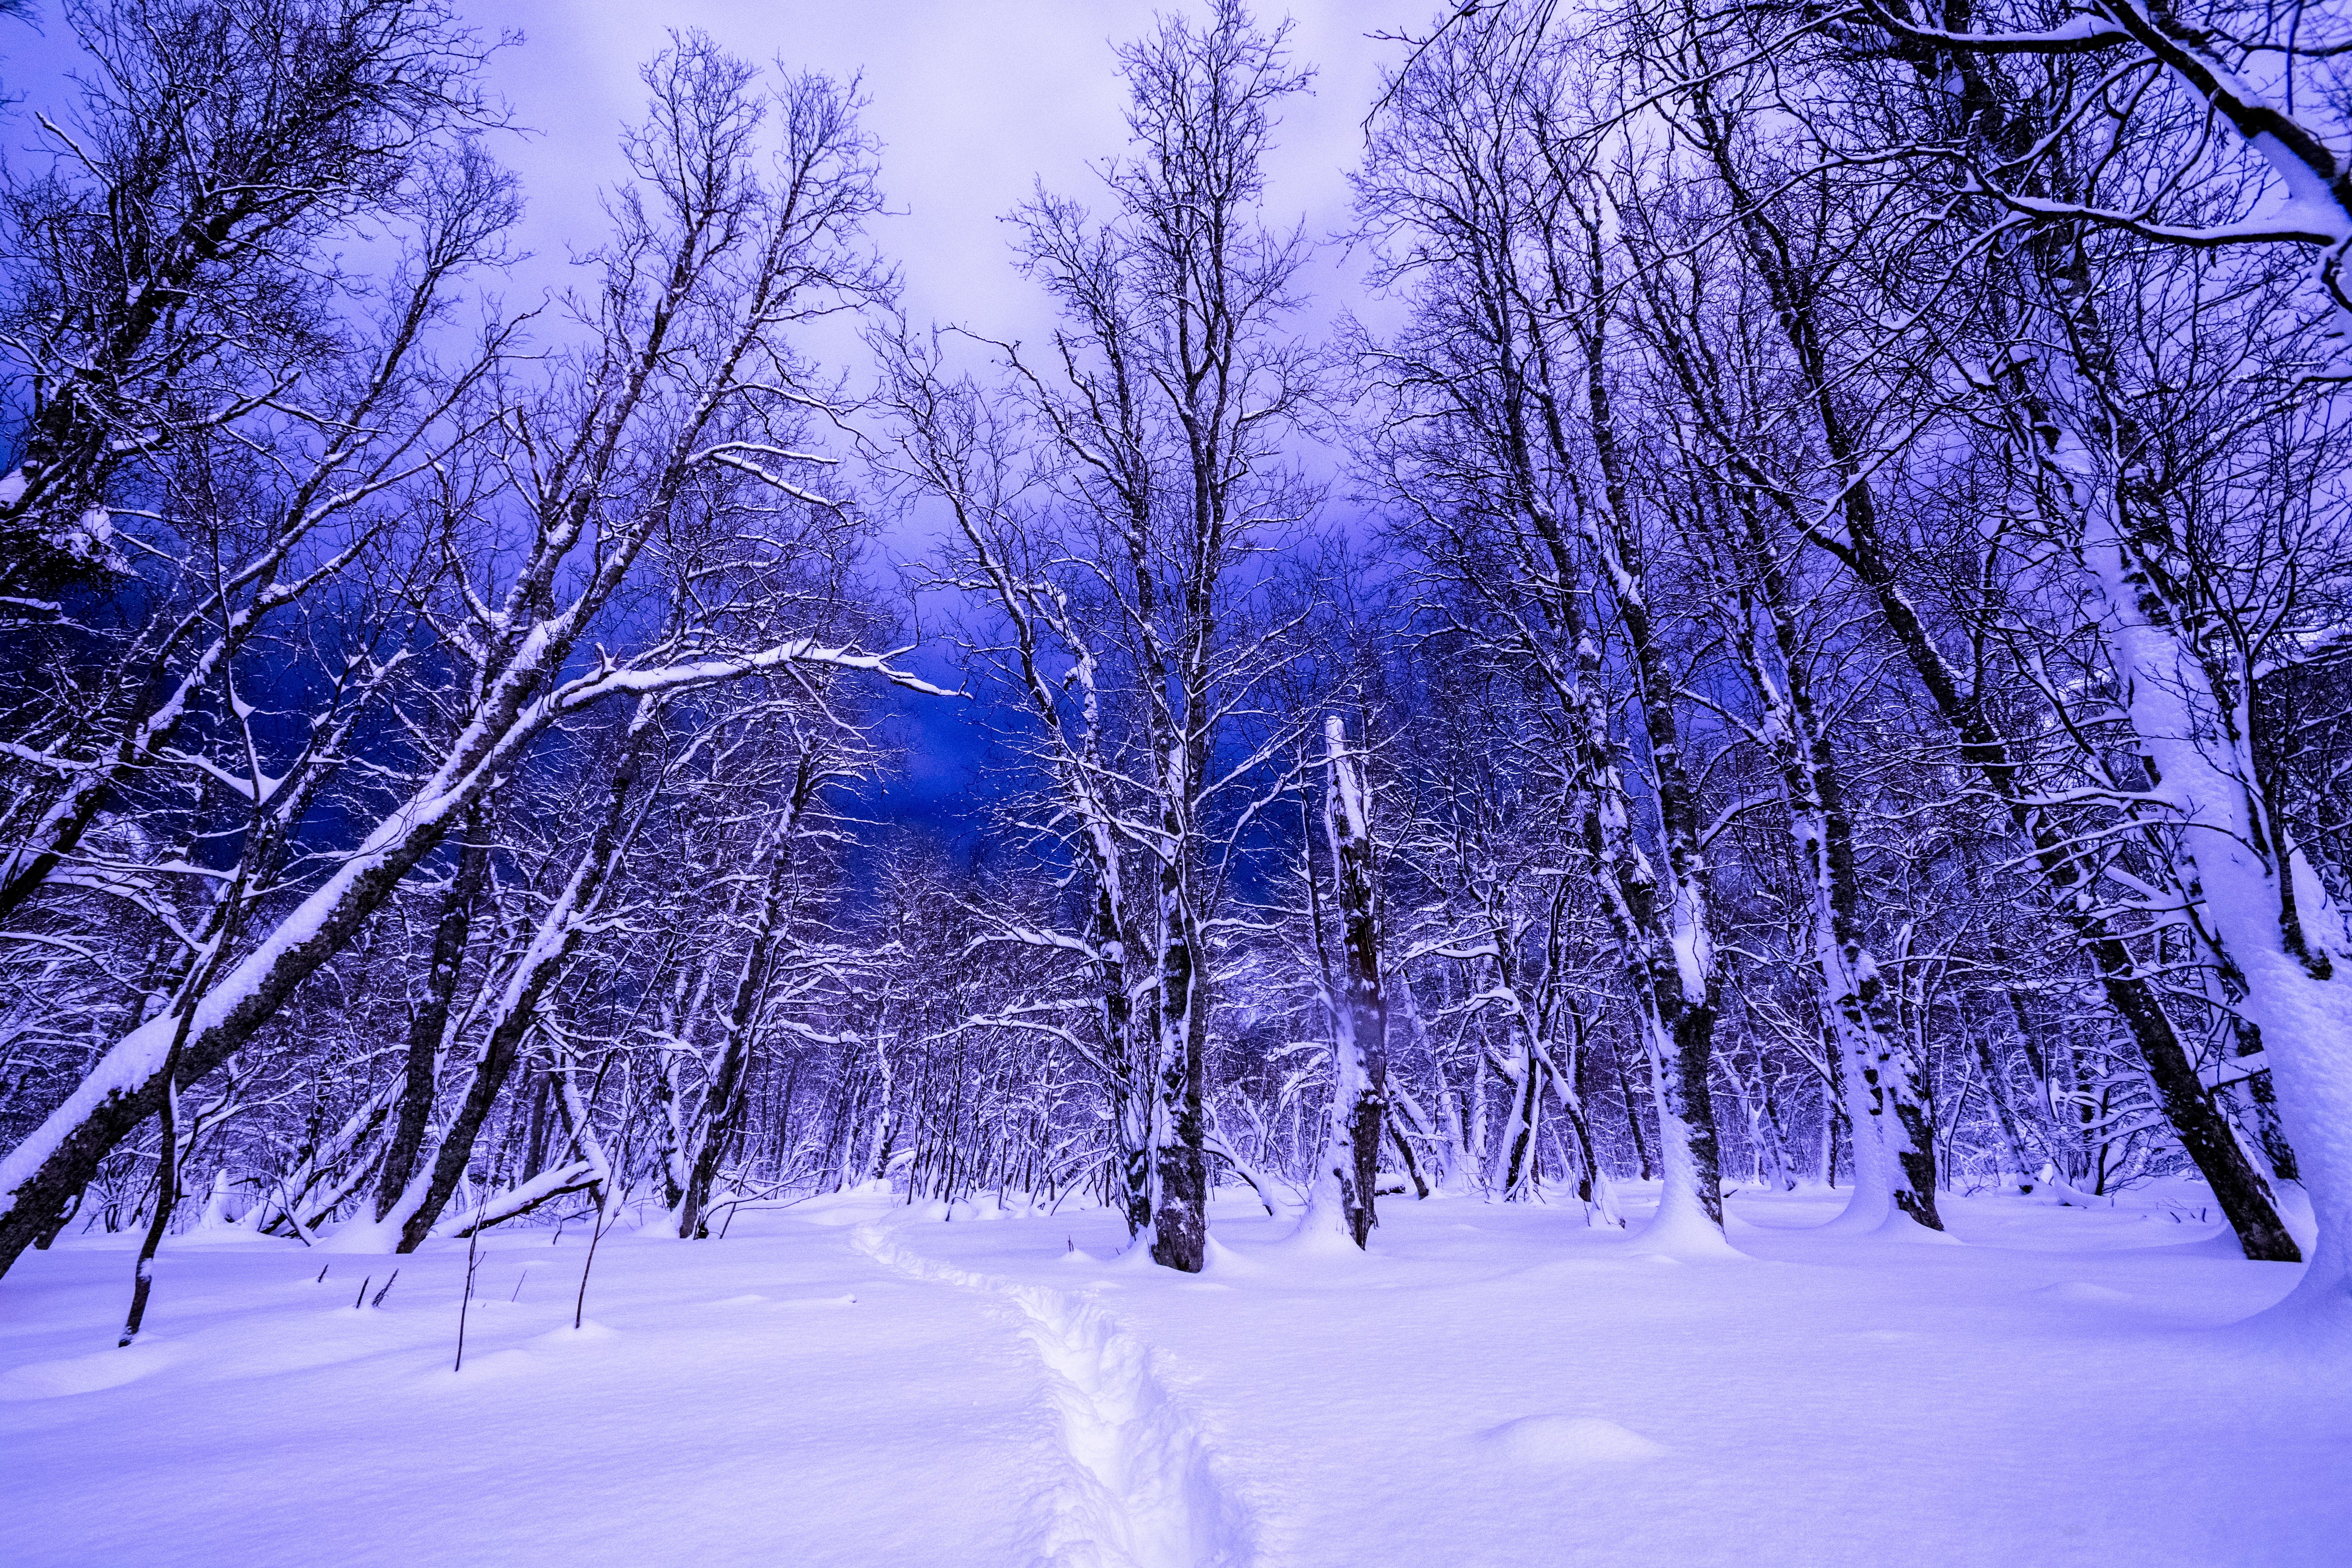 Скачать обои бесплатно Зима, Небо, Снег, Лес, Дерево, Синий, Земля/природа картинка на рабочий стол ПК